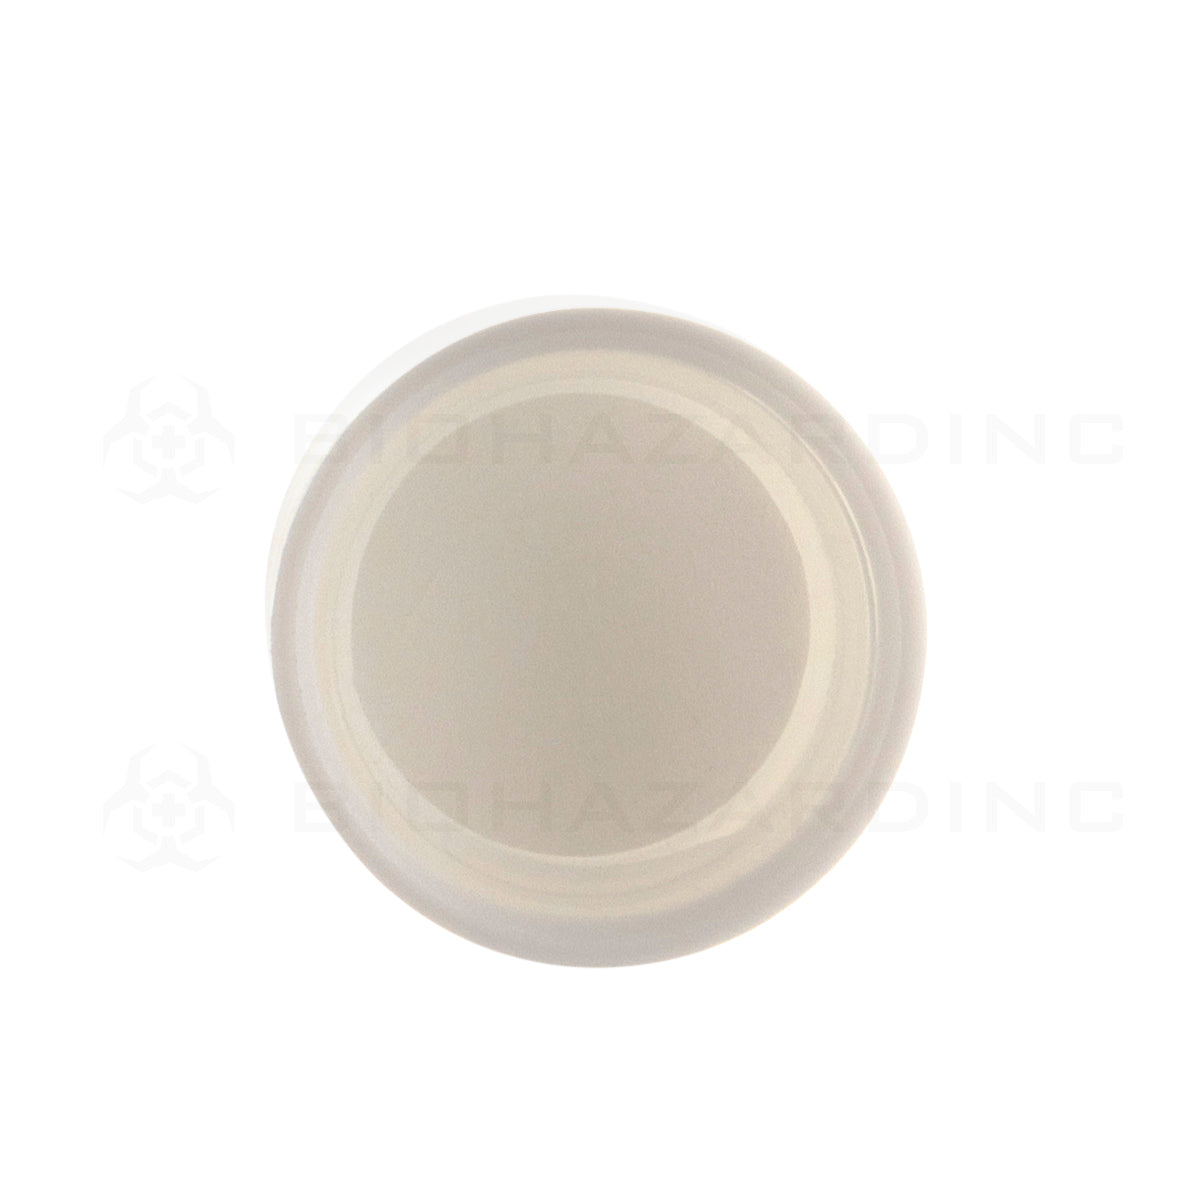 Child Resistant Cap | Plastic Cap | 20mm - Matte White - 144 Count Child Resistant Cap Biohazard Inc   